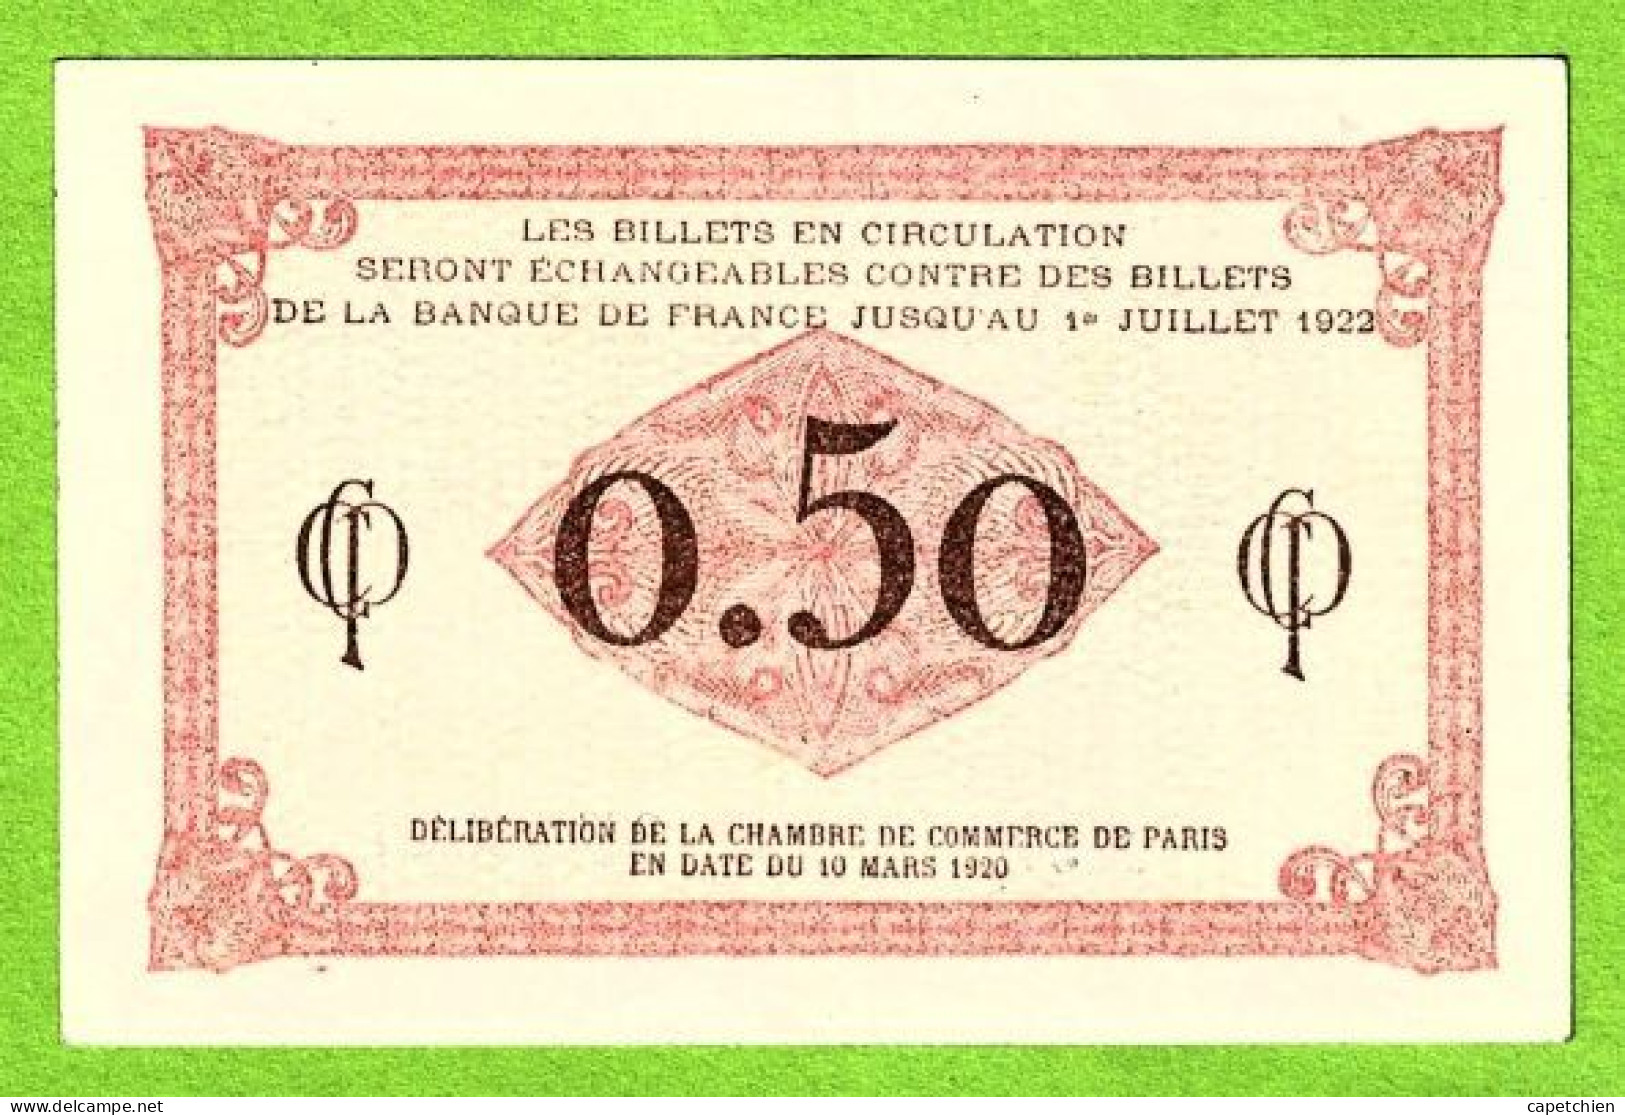 FRANCE / CHAMBRE De COMMERCE De PARIS / 50 CENT. / 10 MARS 1920 / N° 071,881 / SERIE F 37 / NEUF - Cámara De Comercio